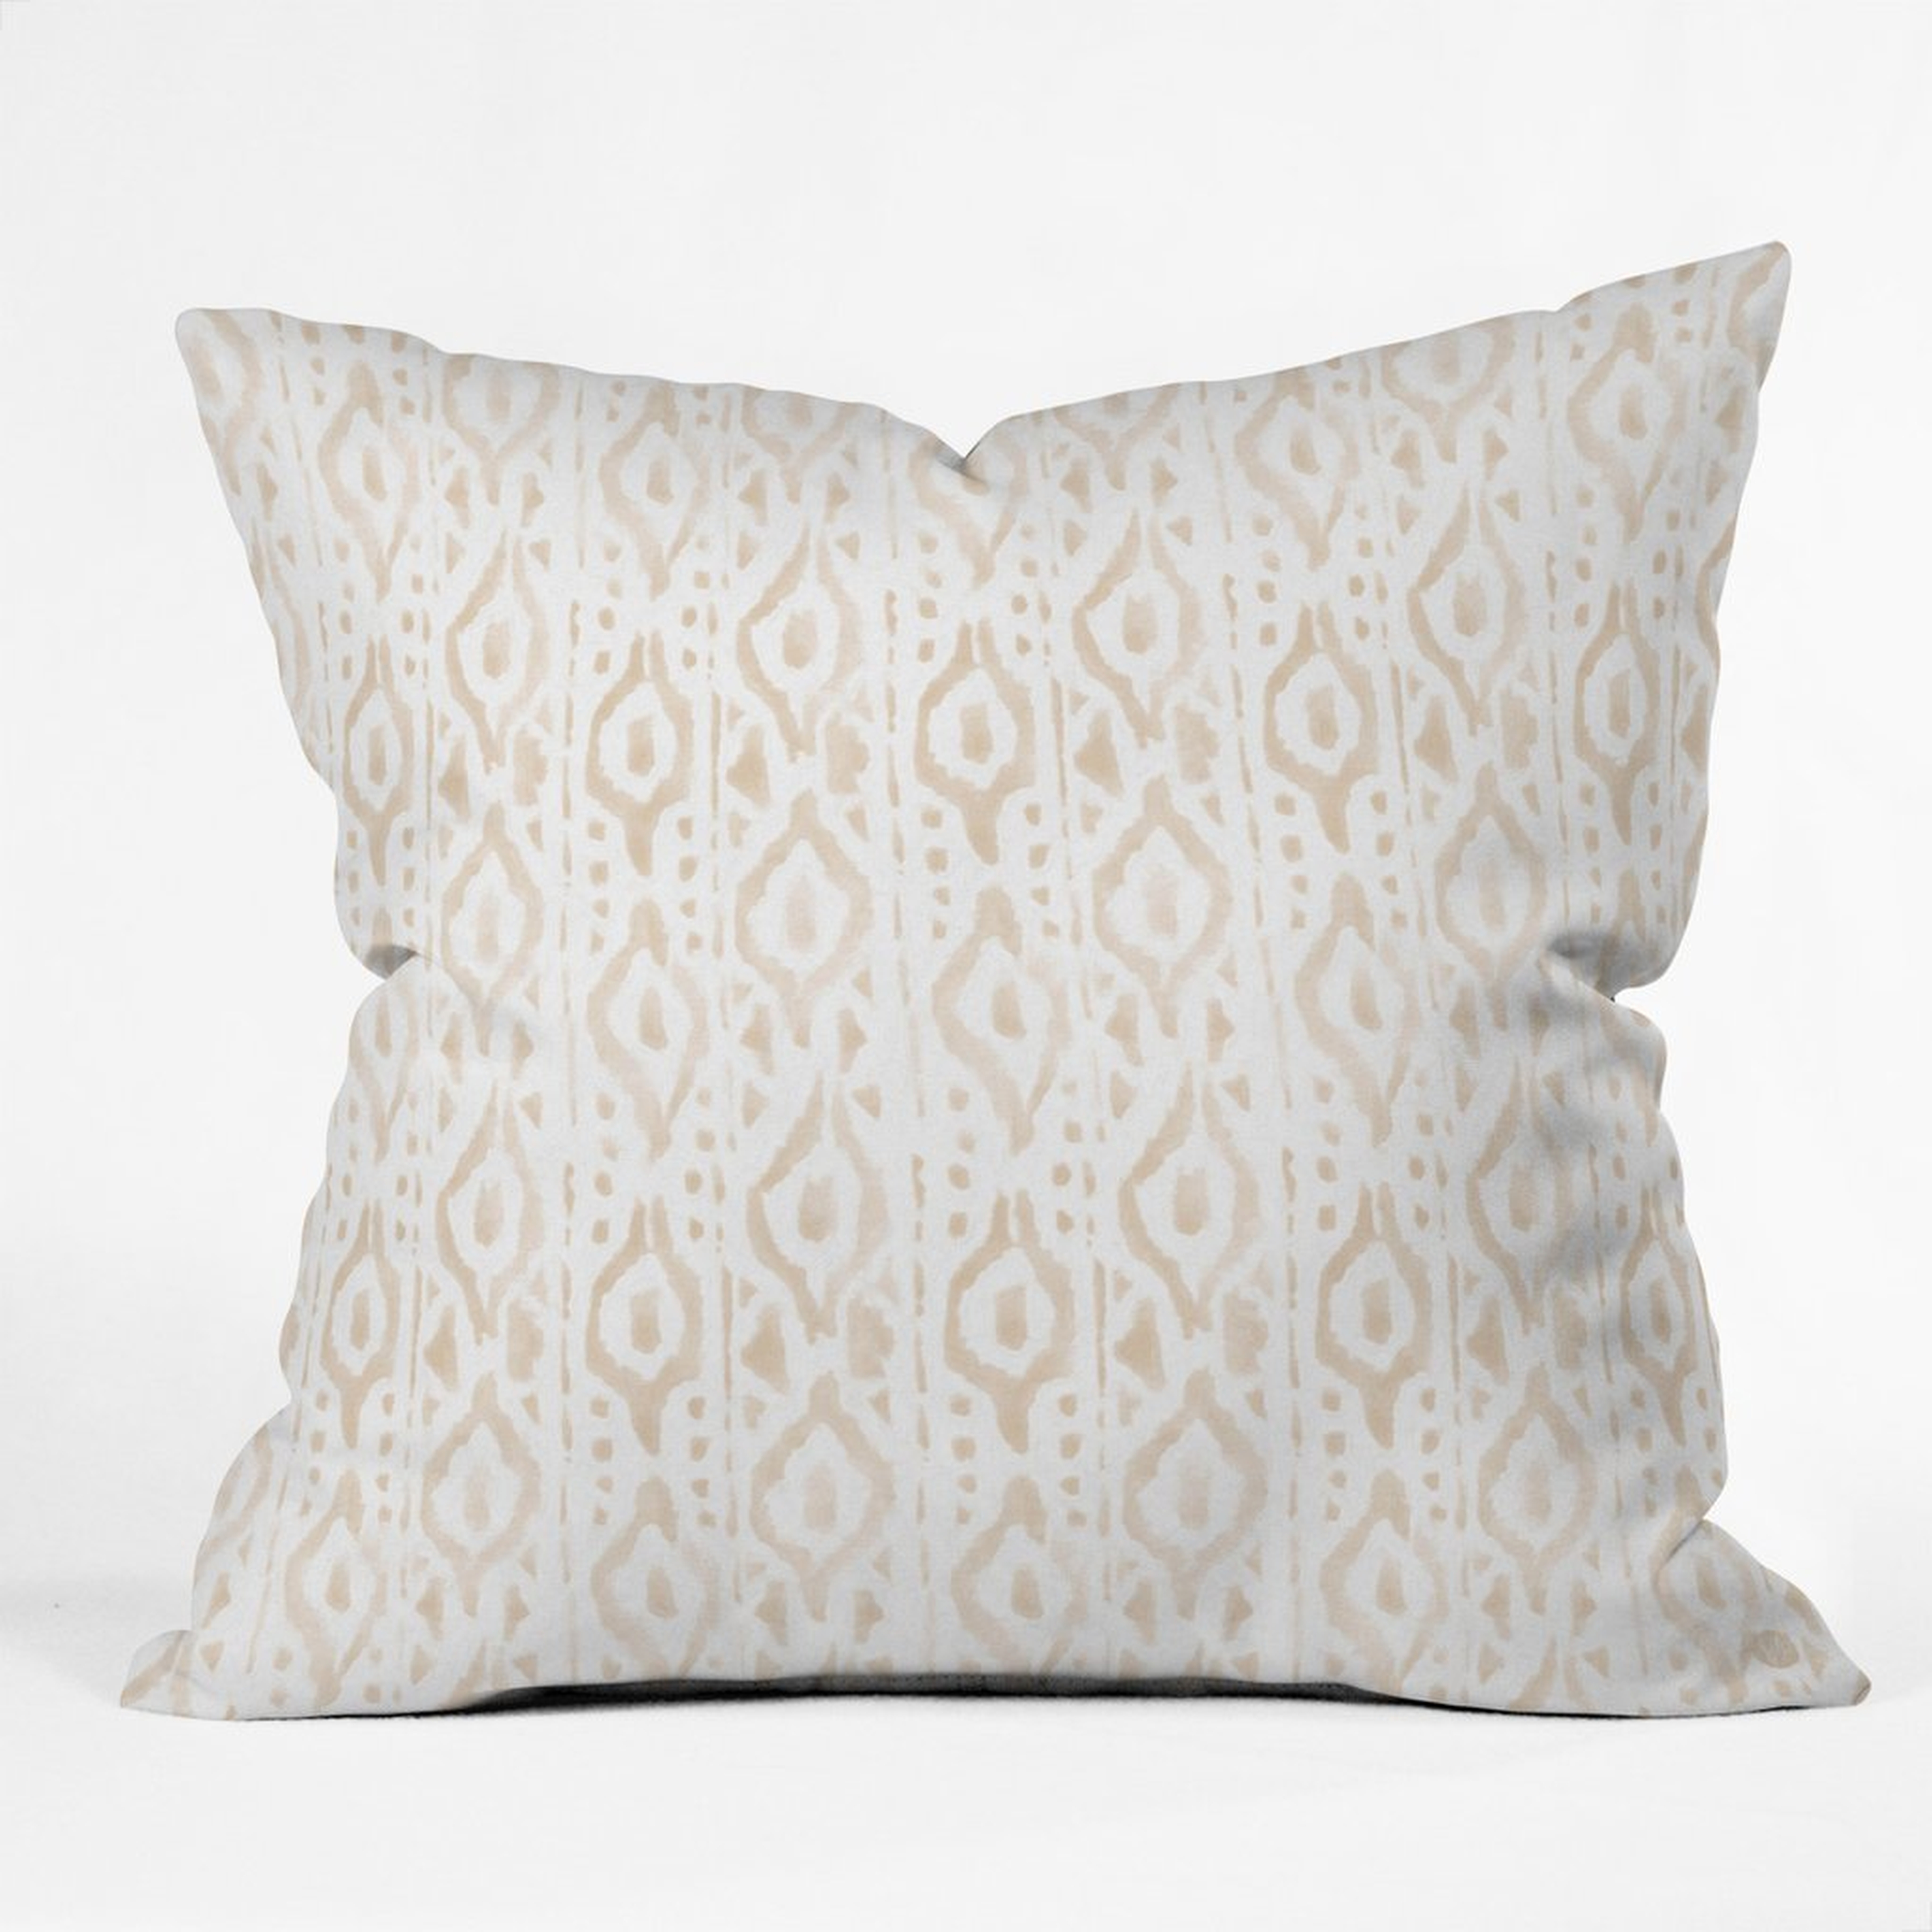 DESERT LINEN Throw Pillow - 16" x 16" - Polyester Insert - Wander Print Co.